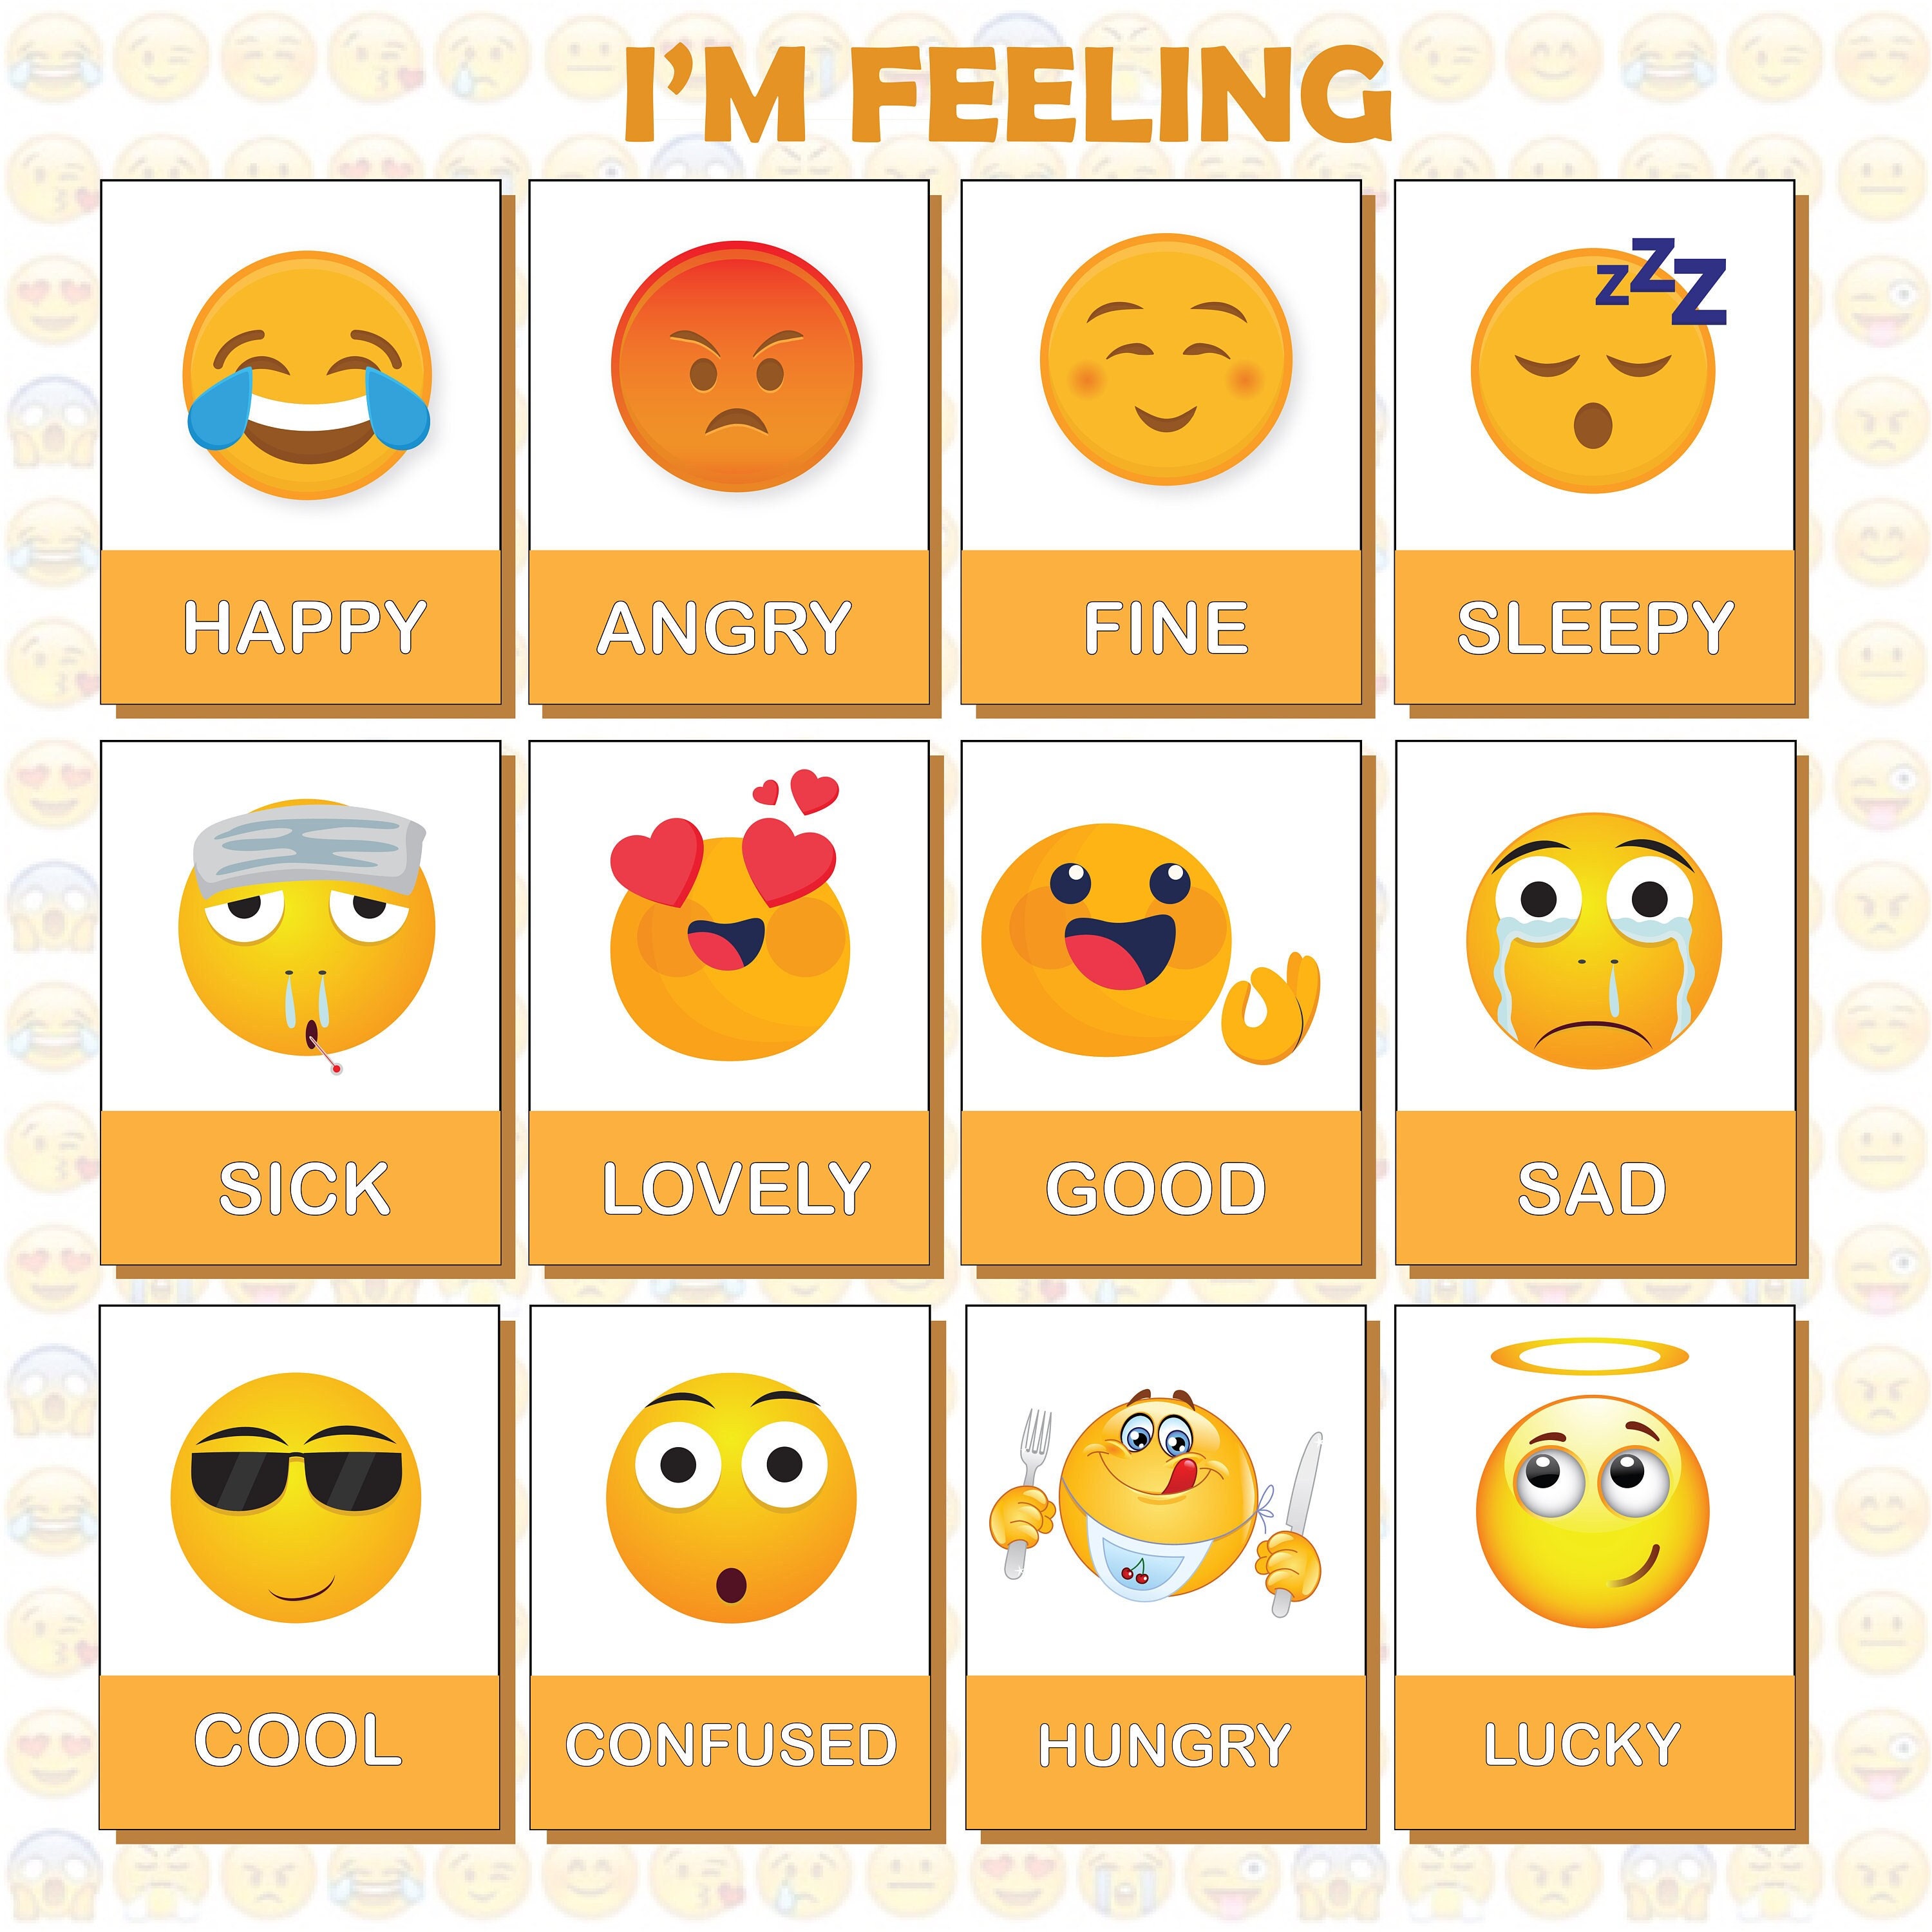 Cartes pour jeu de paire : Les émotions en émoticones